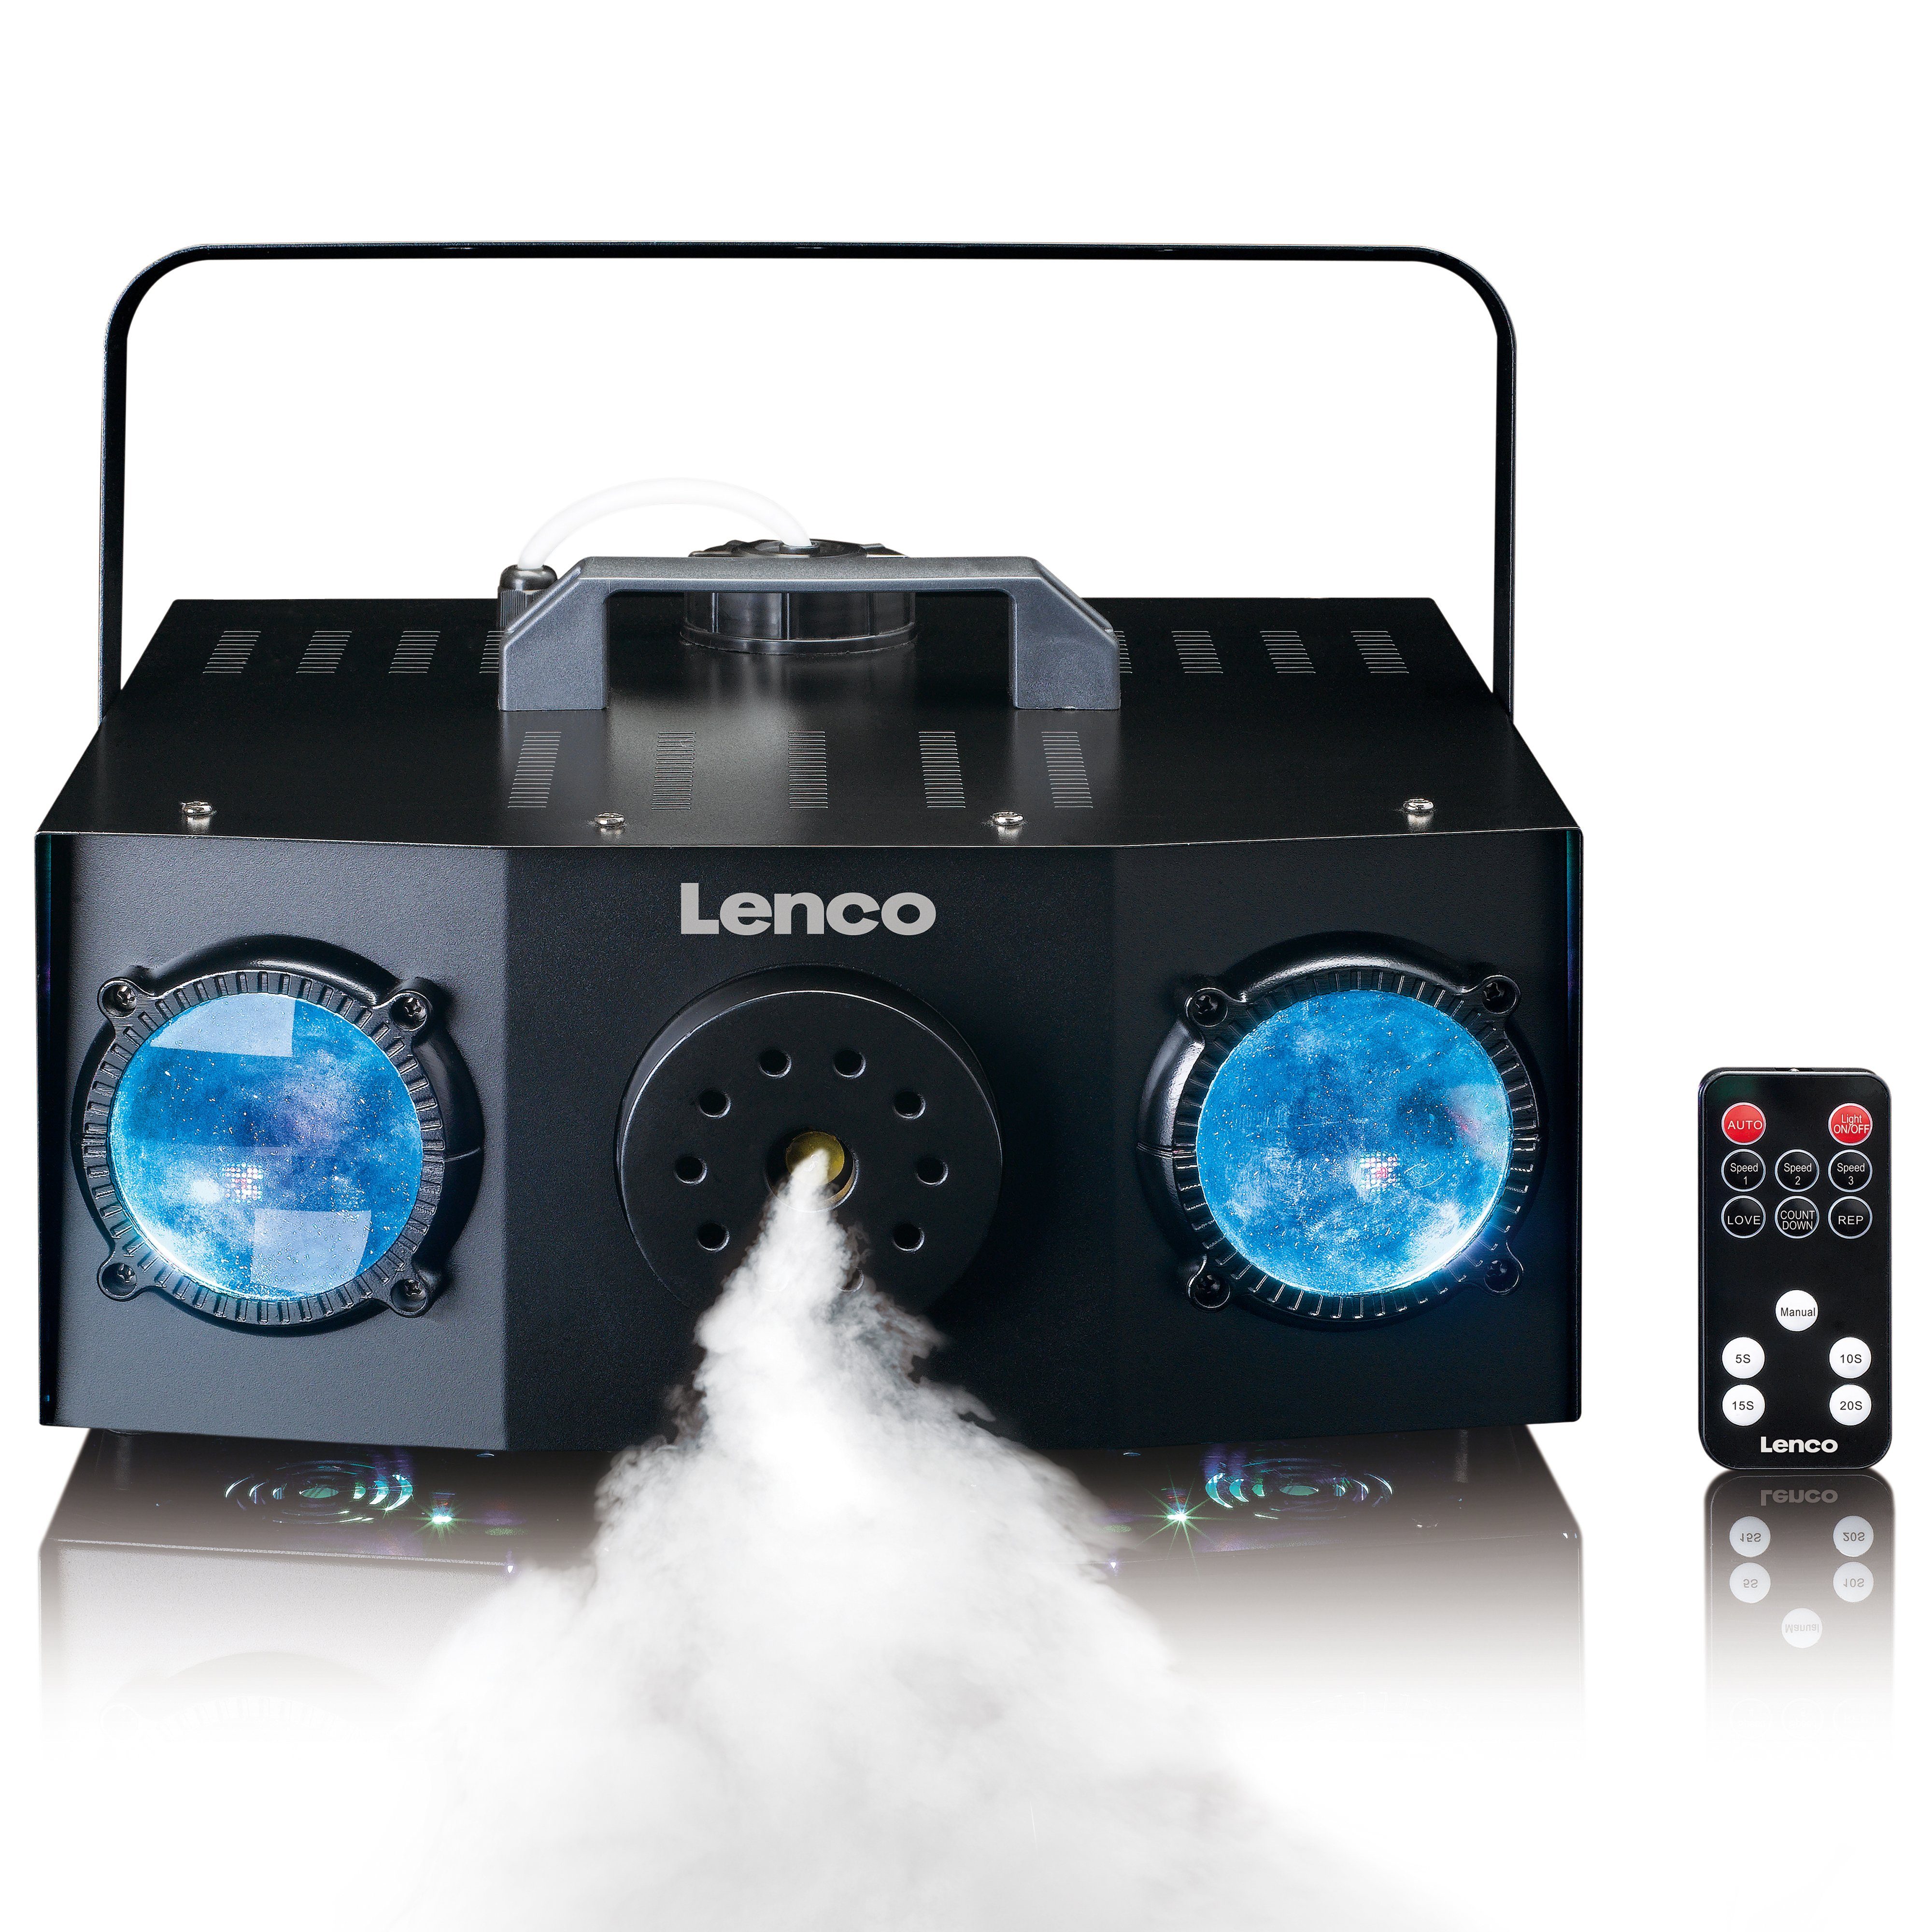 Lenco LED Discolicht LFM-220BK, Integriertes Lichtshow-Programm im Auto- und Musikmodus, Matrix LED,Nebel-machine, Blau,Grün,Rot